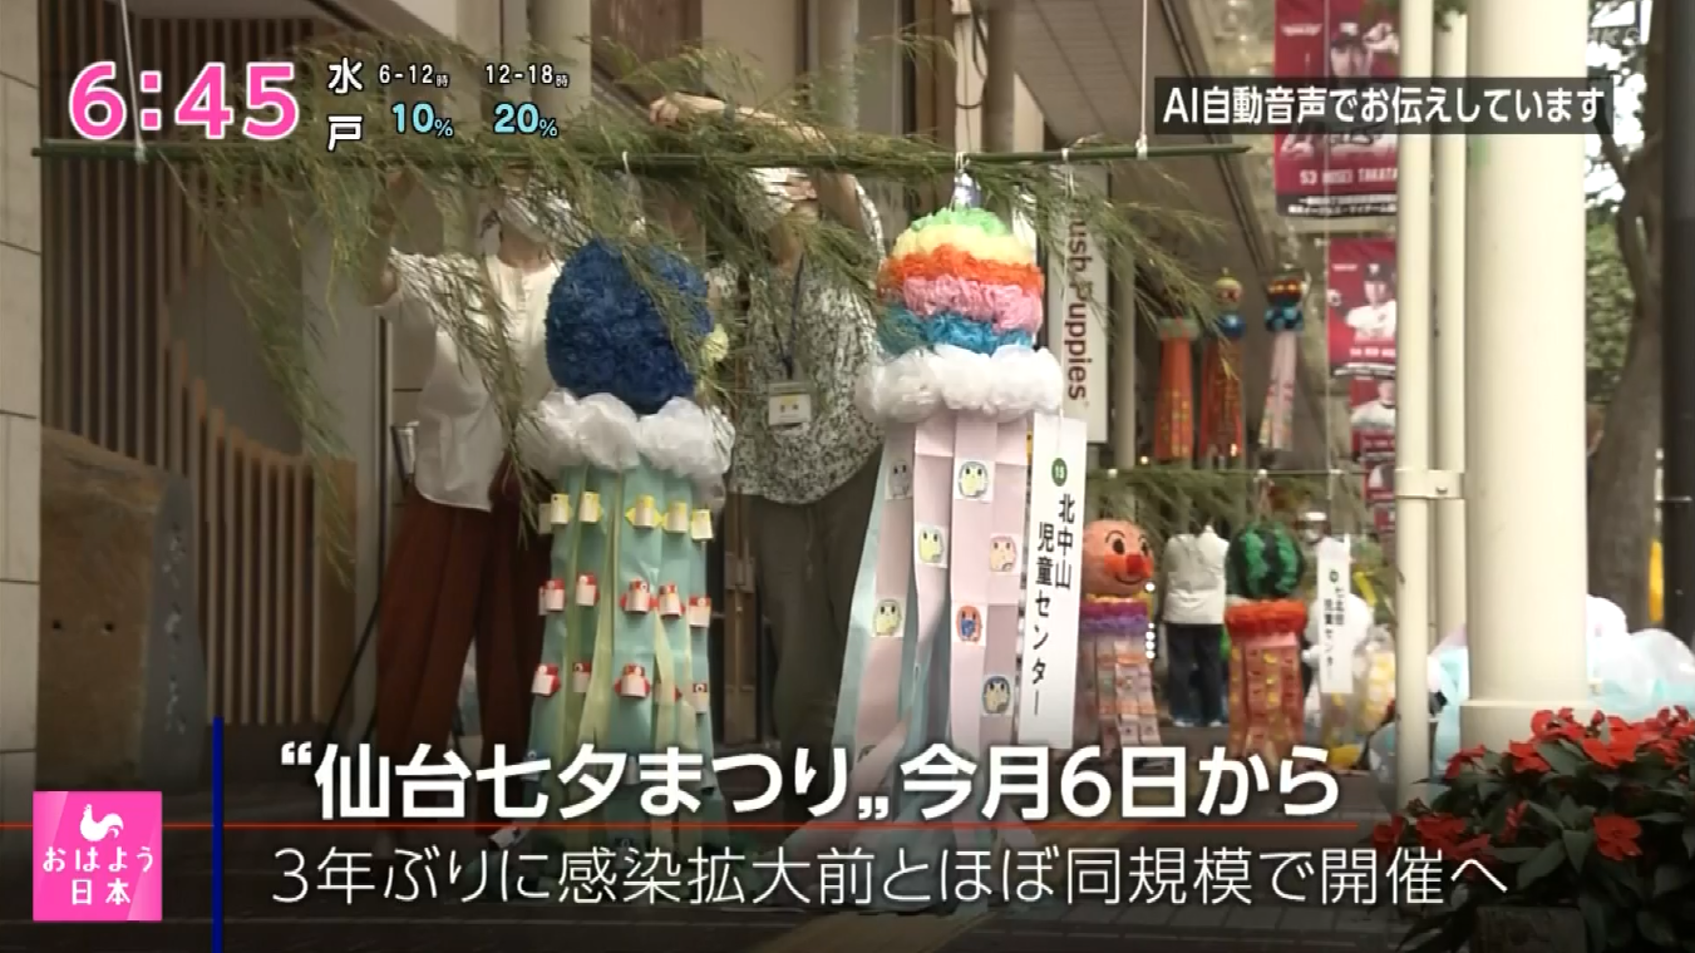  Regular News On NHK 